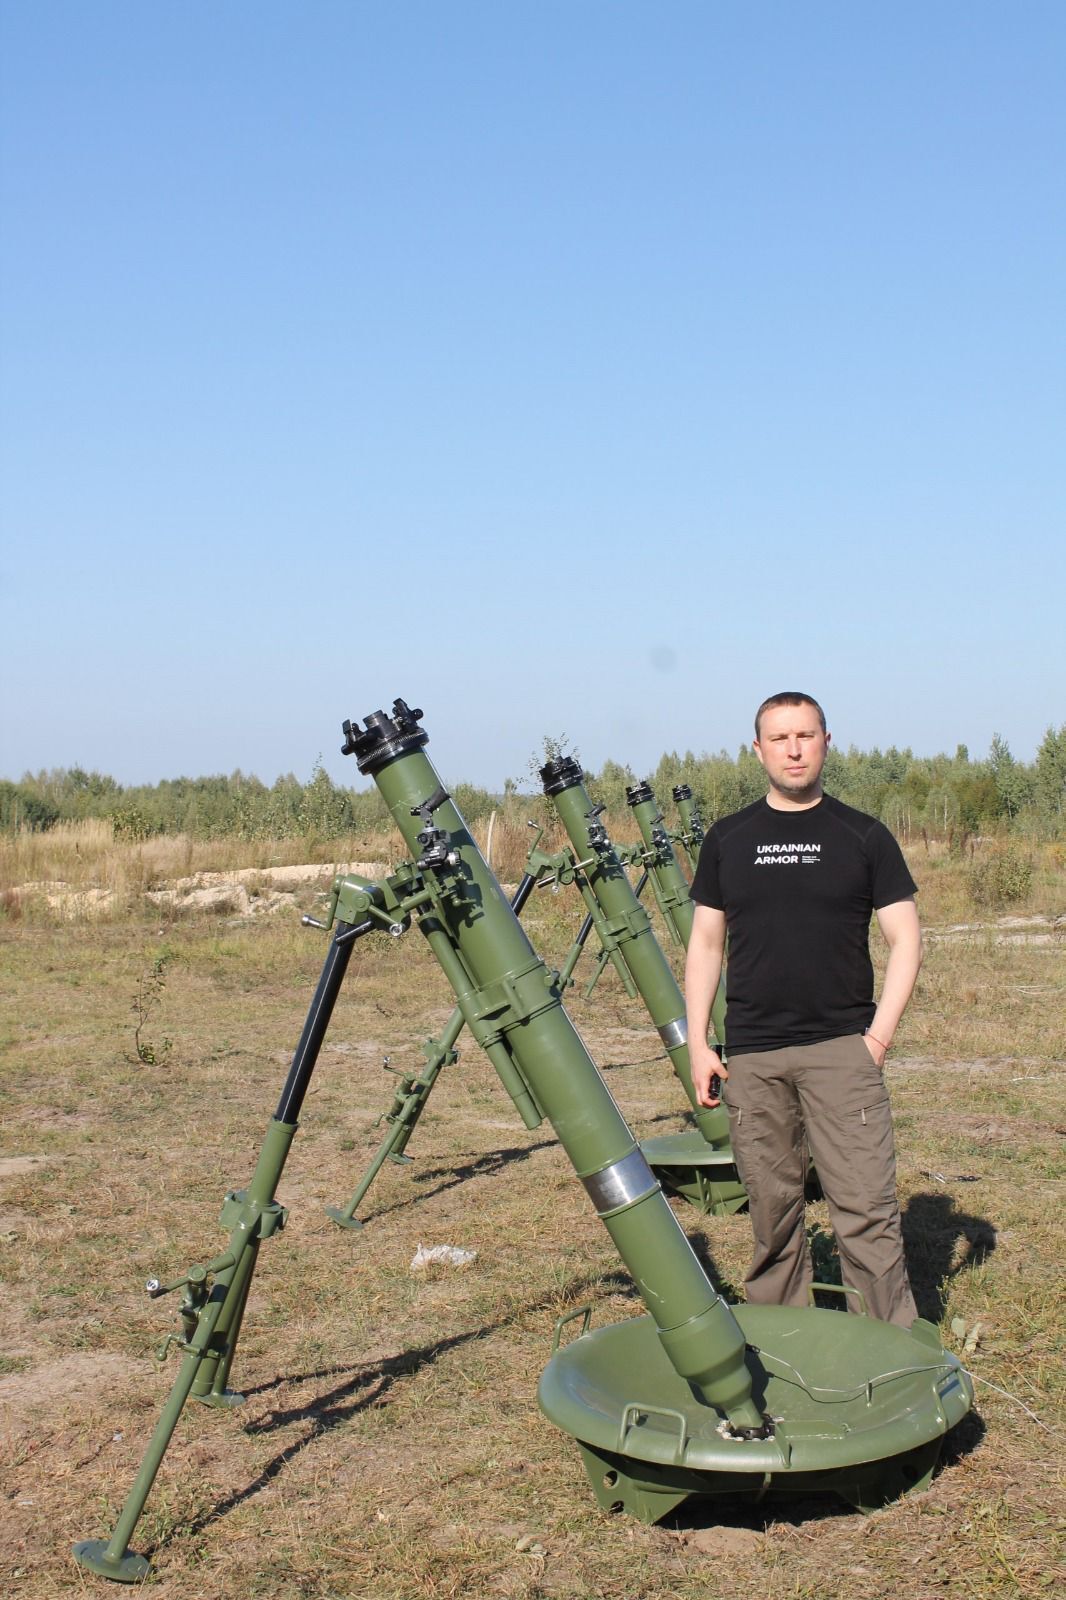 Усилят ВСУ: в Украине опробовали новую партию 120-мм минометов. Фото и видео